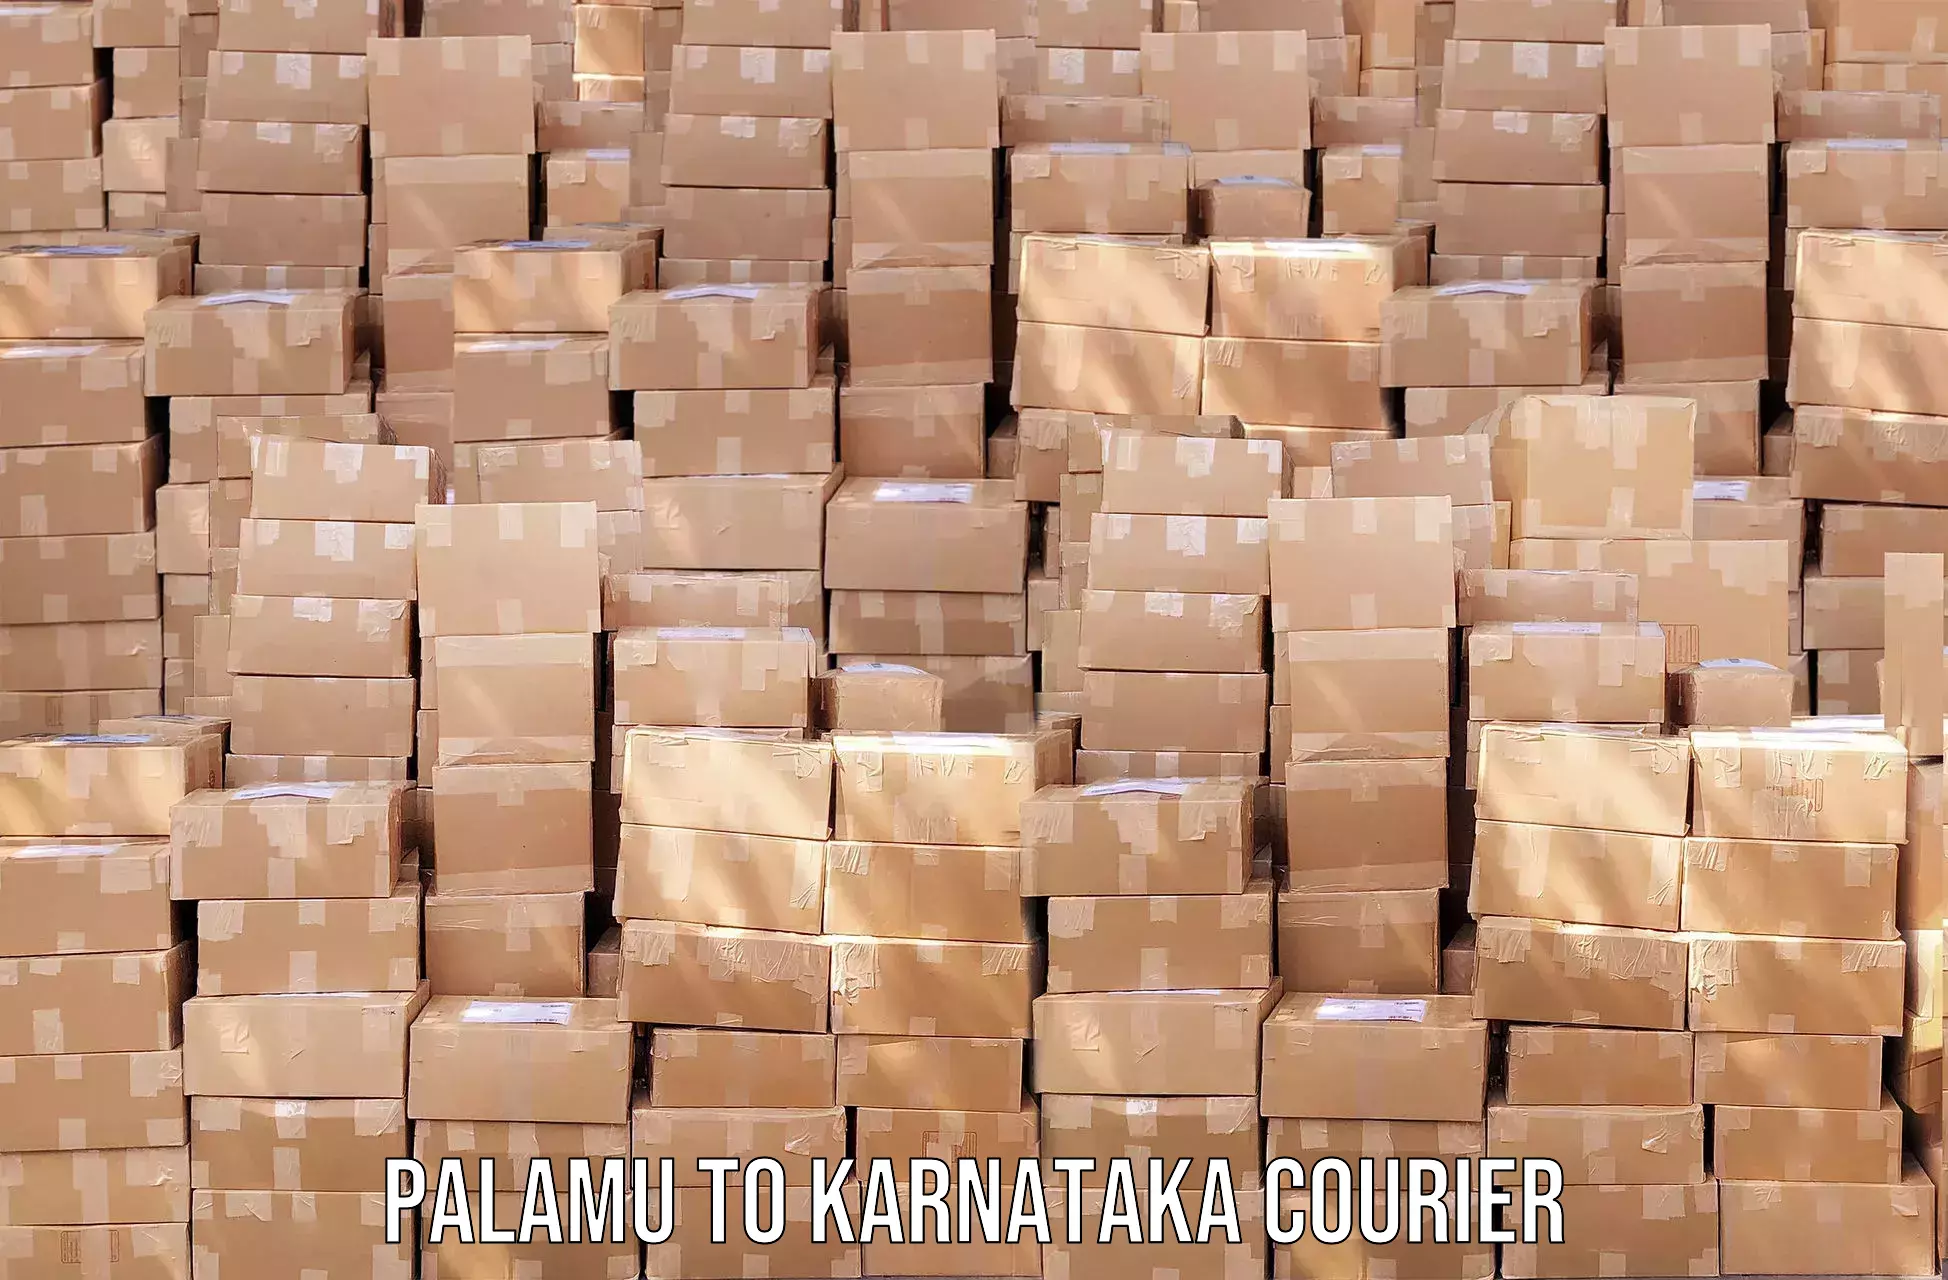 Efficient parcel service Palamu to Manvi